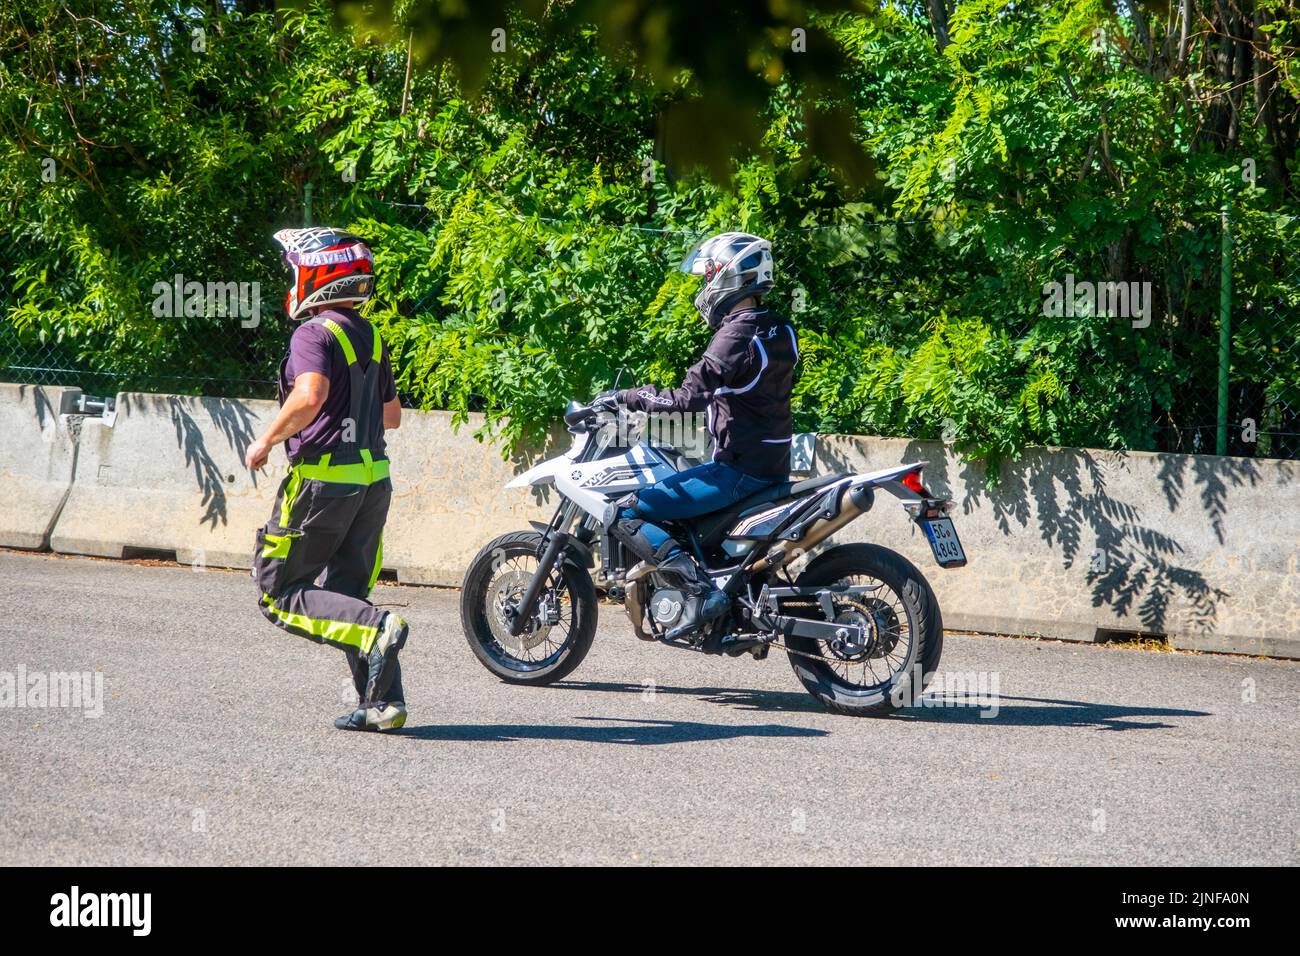 Prag, Tschechische Republik - 12. Juli 2022: Männlicher Instruktor kontrolliert den L-Fahrer, während sie im Geschicklichkeitstraining Motordrome Fahrrad fährt Stockfoto